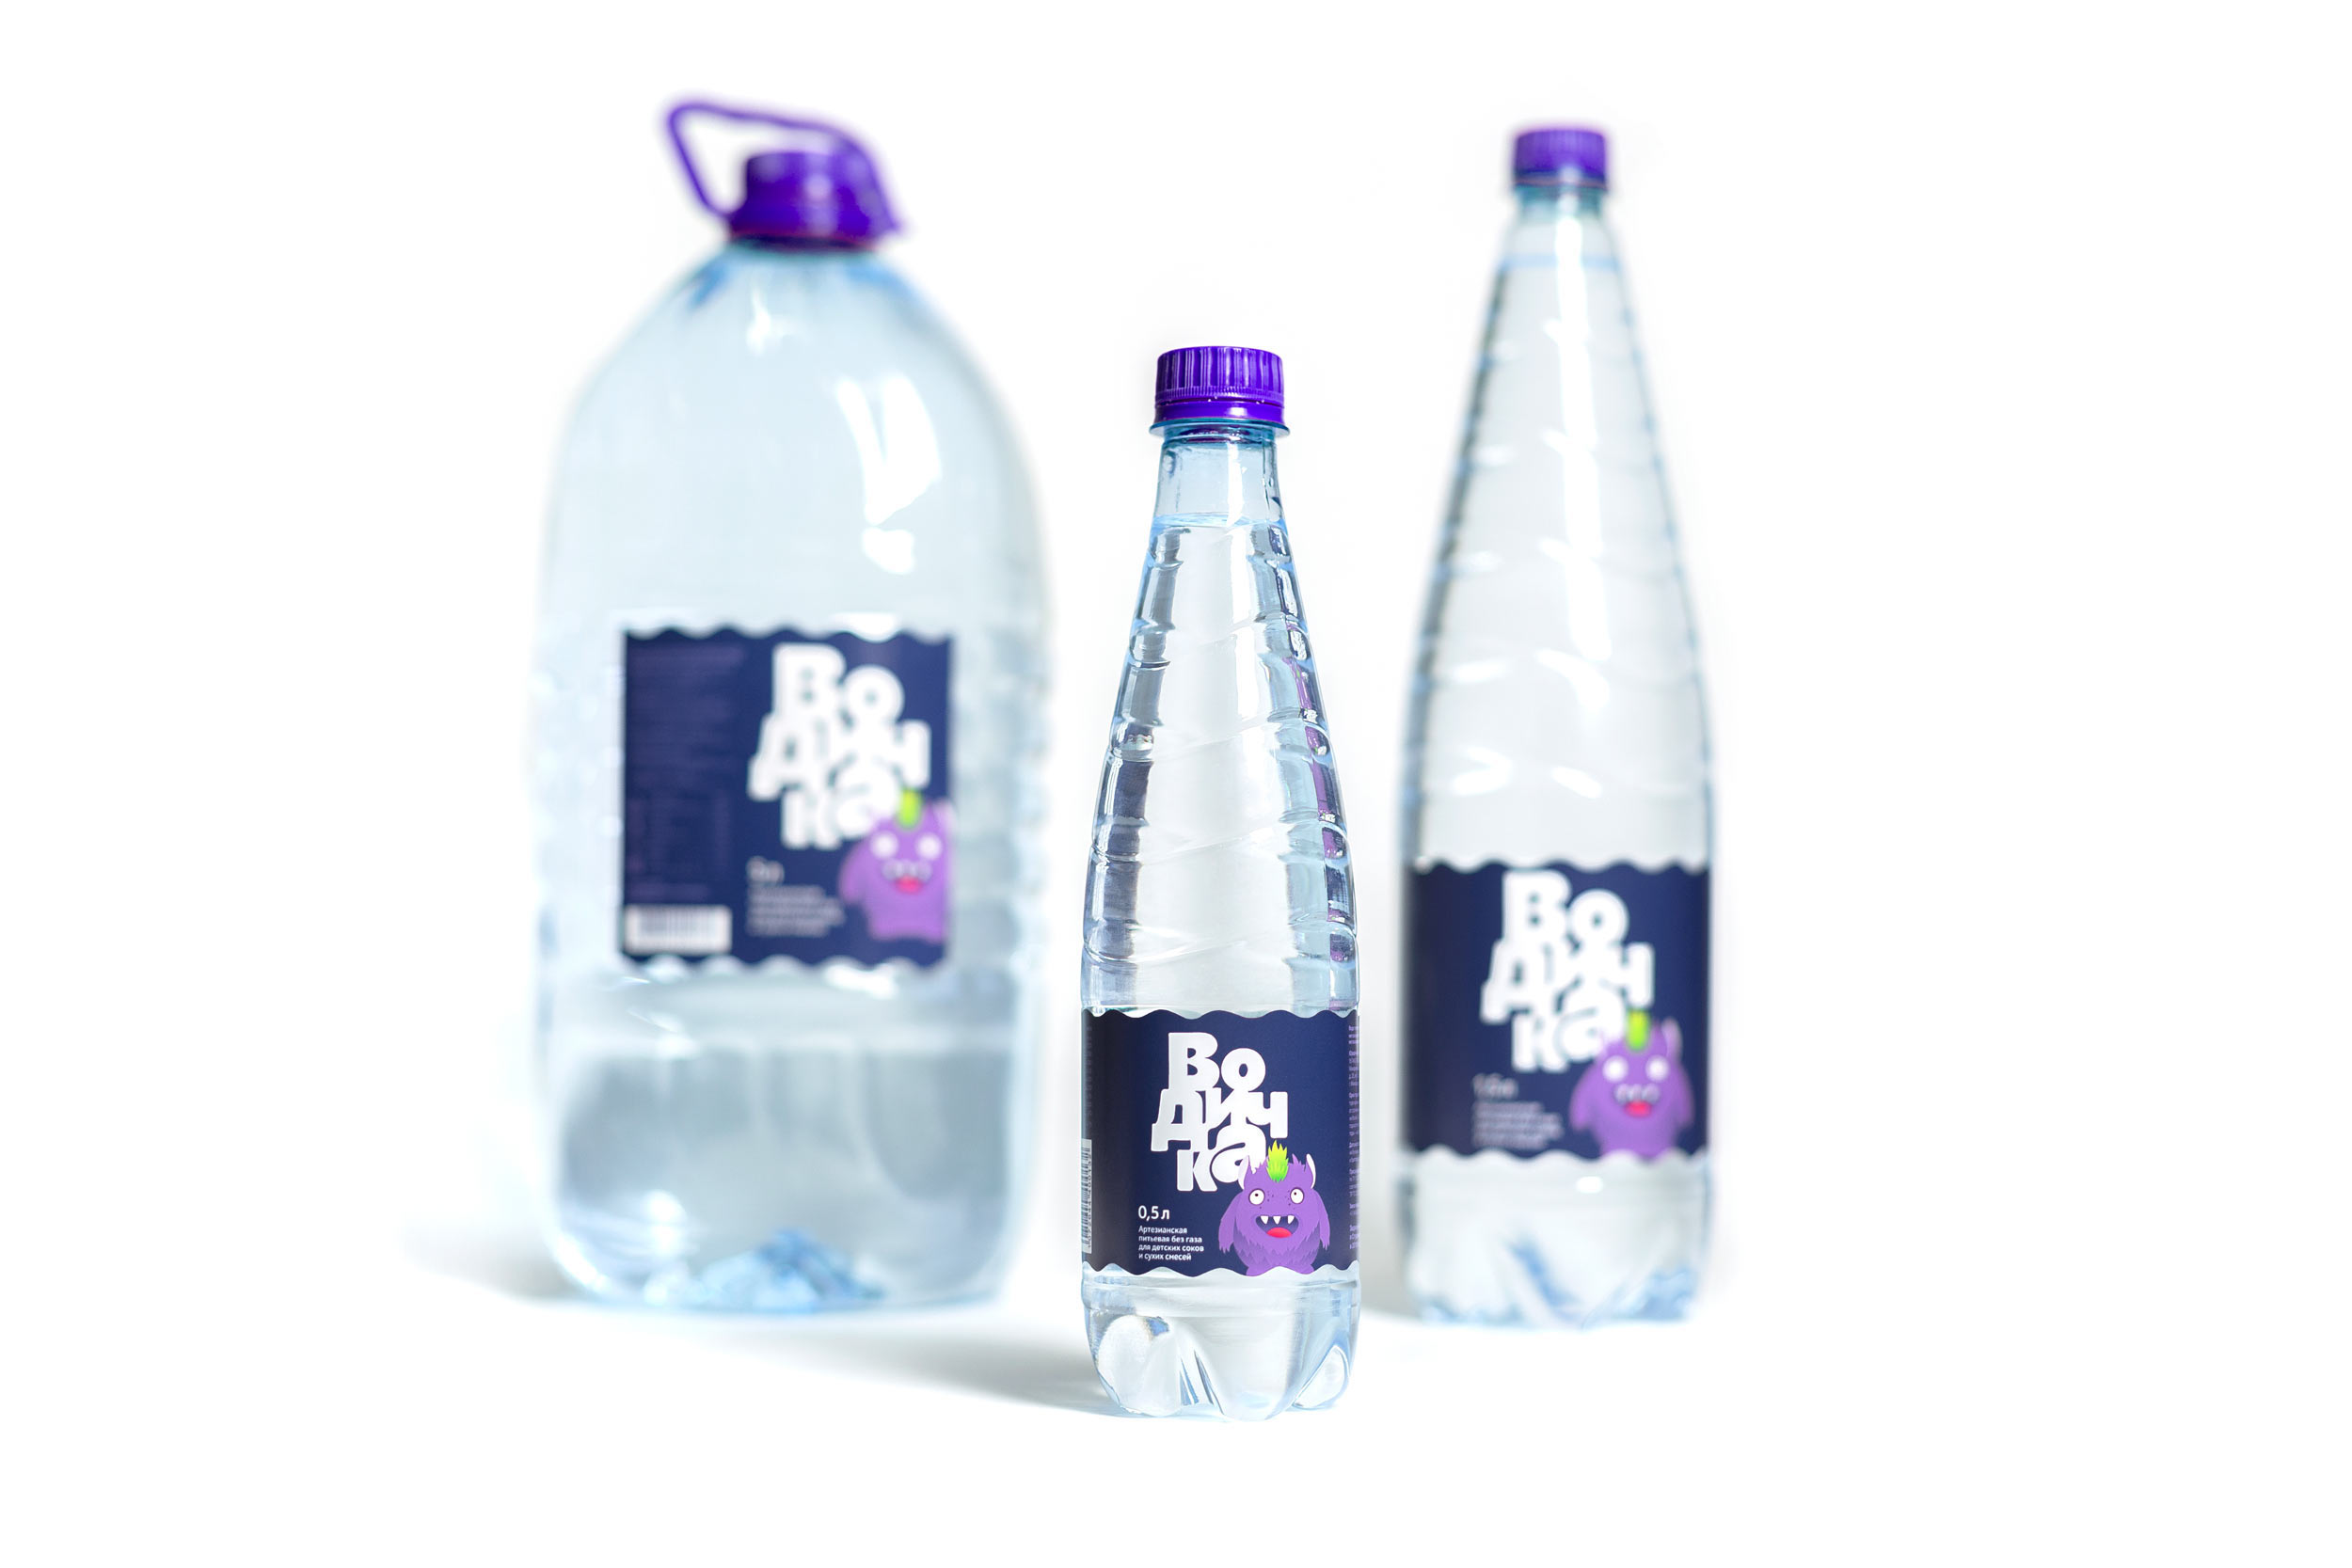 vodichka bottles